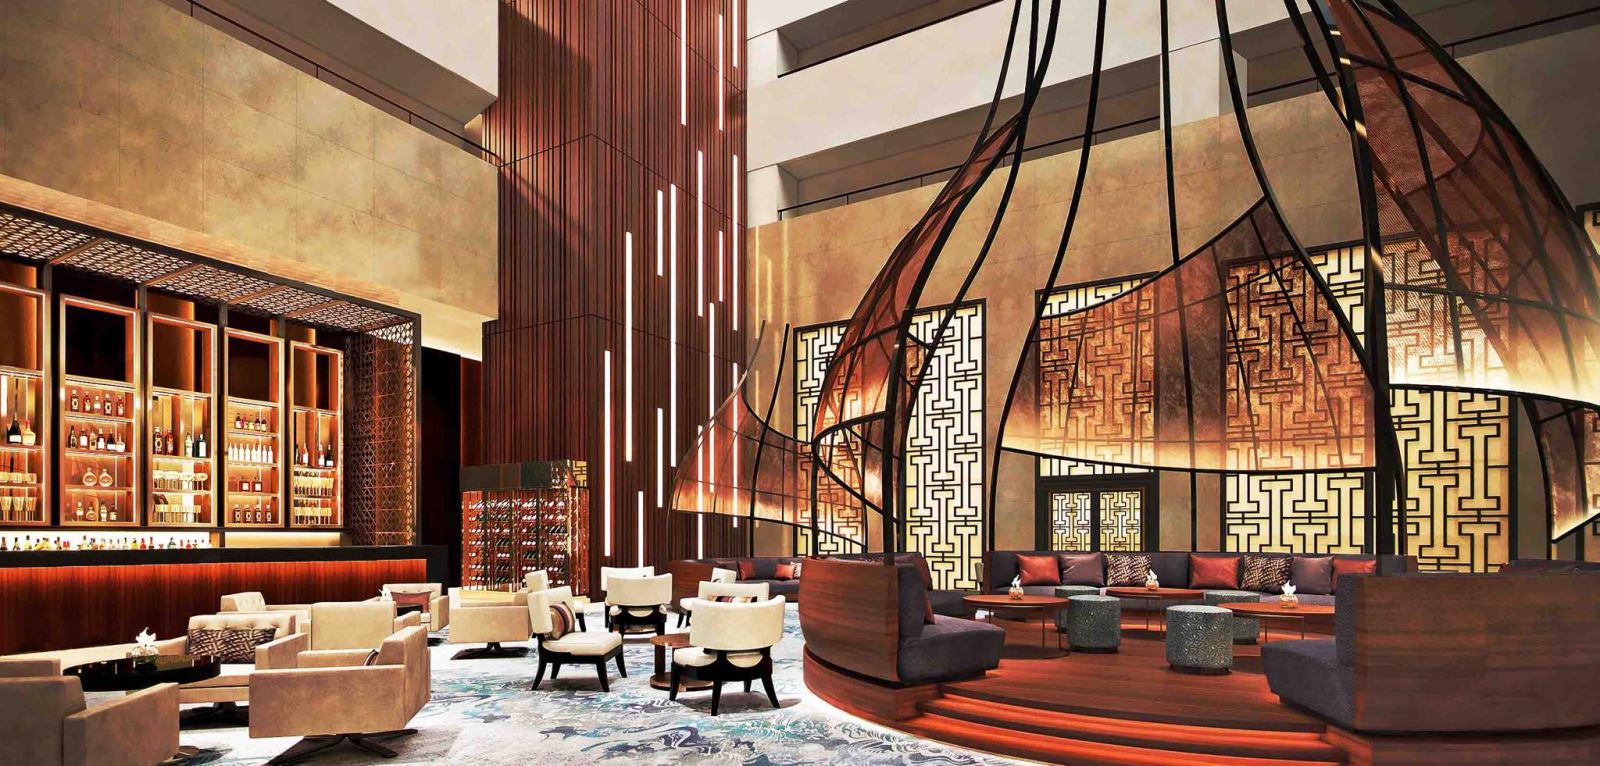 Nội ngoại thất inox tại Khách sạn Intercontinental Hà Nội Landmark 72